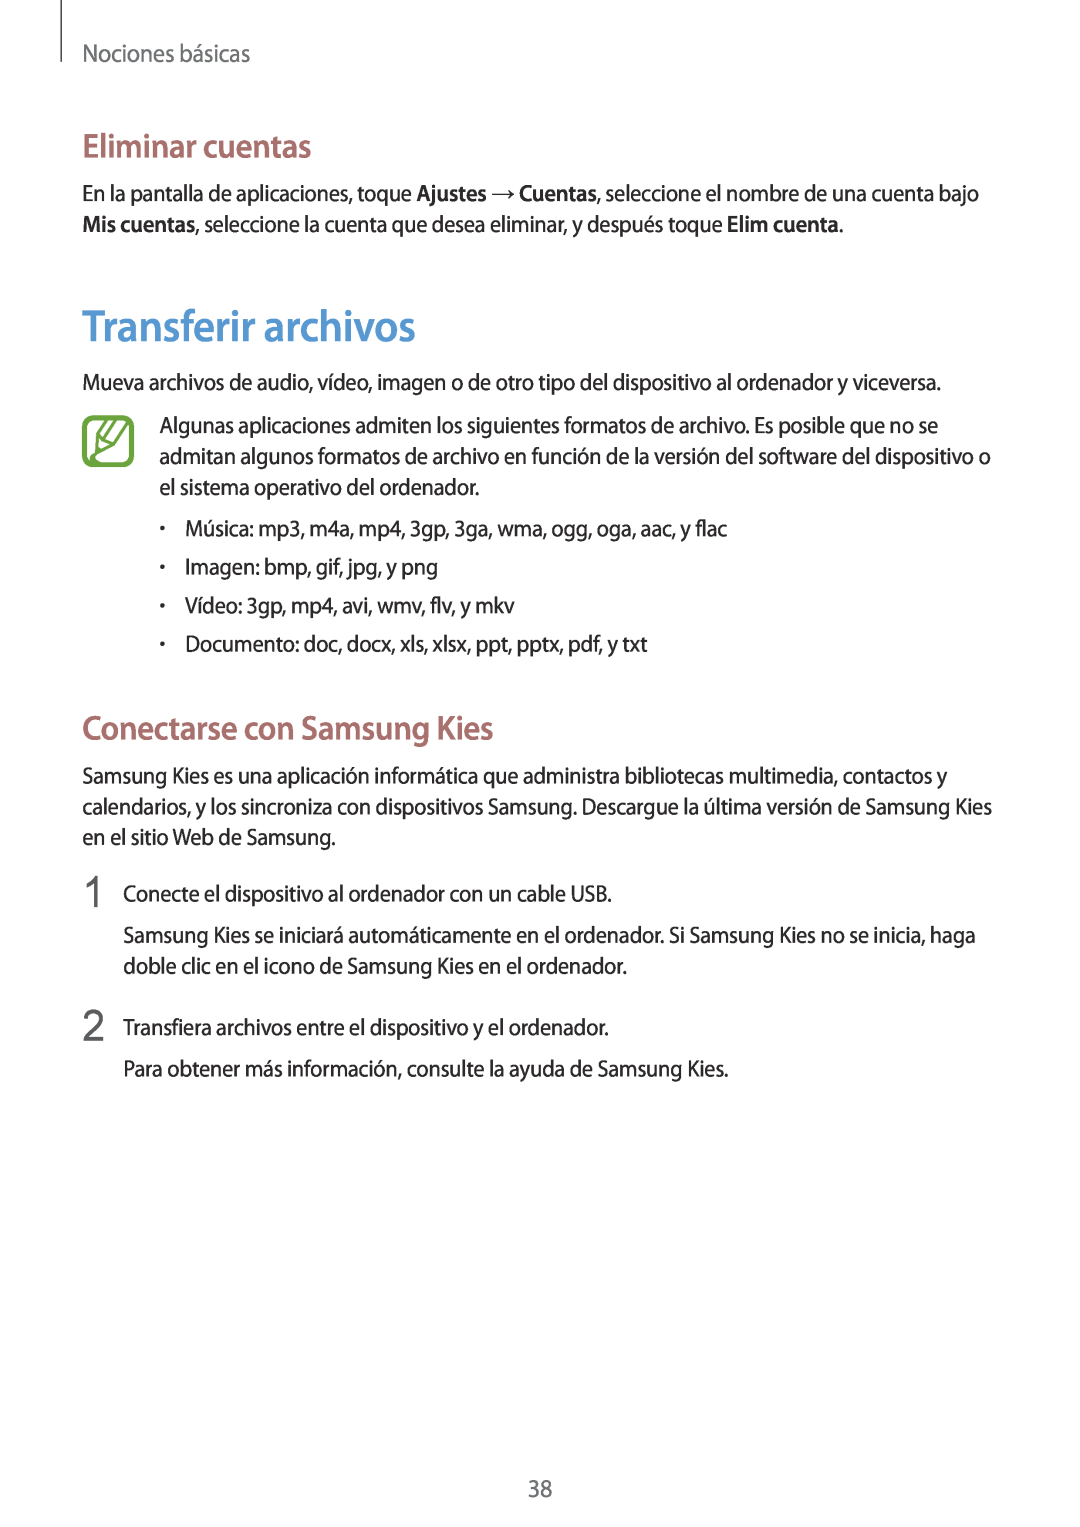 Samsung GT-I9195ZKAXEC manual Transferir archivos, Eliminar cuentas, Conectarse con Samsung Kies, Nociones básicas 